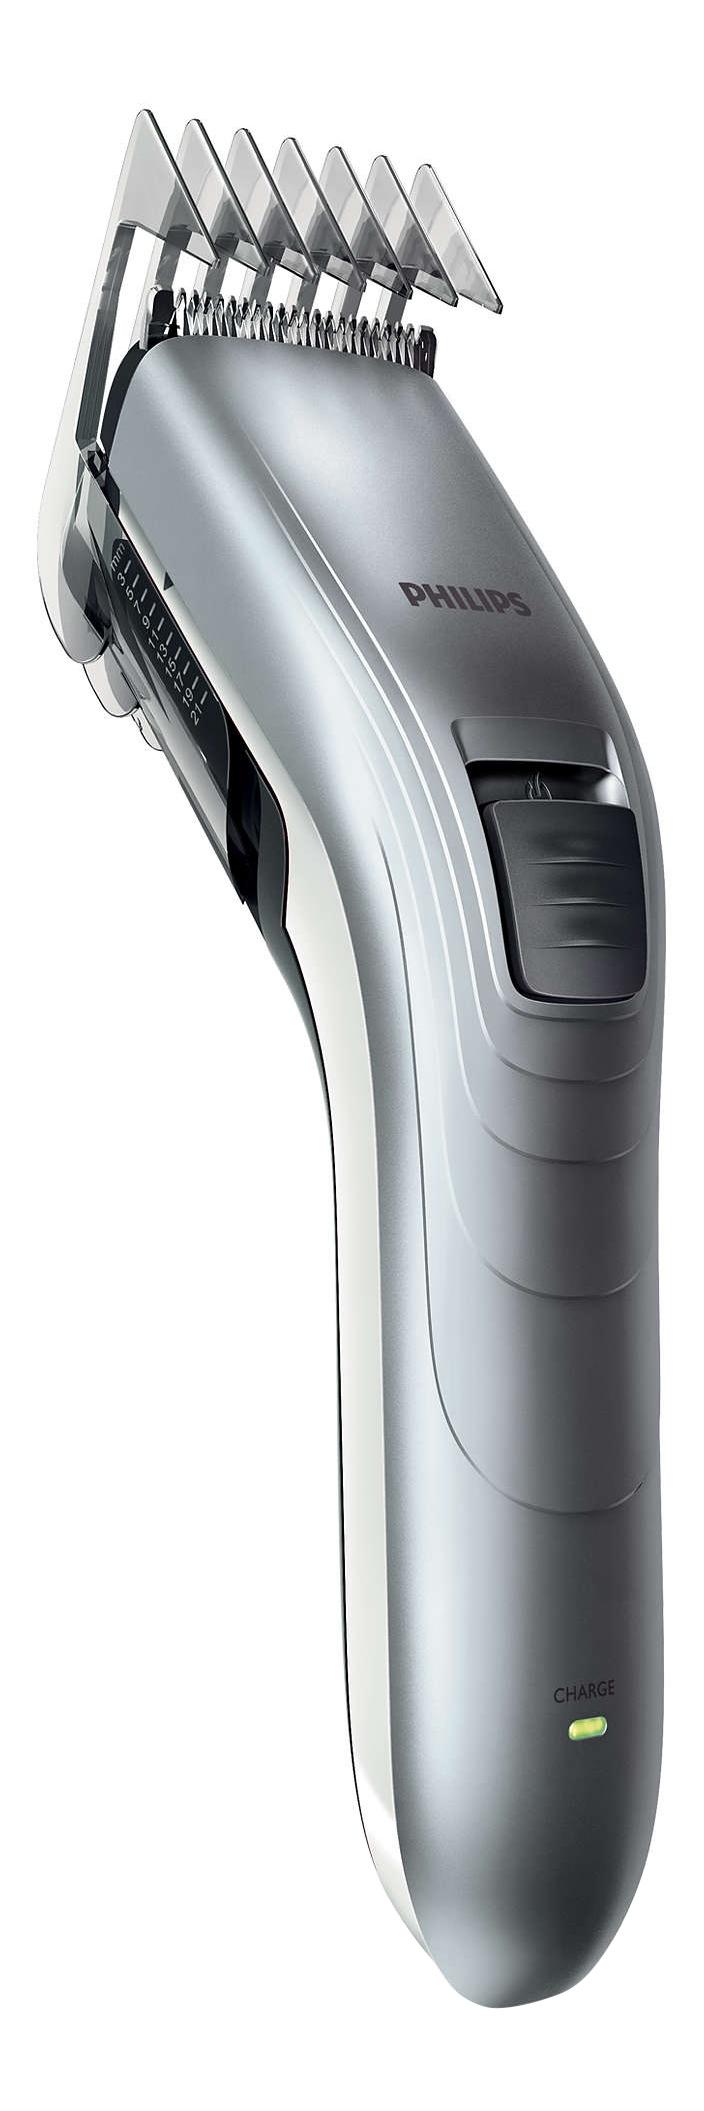 Машинка для стрижки волос Philips Series 3000 QC5130/ 15 машинка для стрижки волос philips hc3525 15 серый